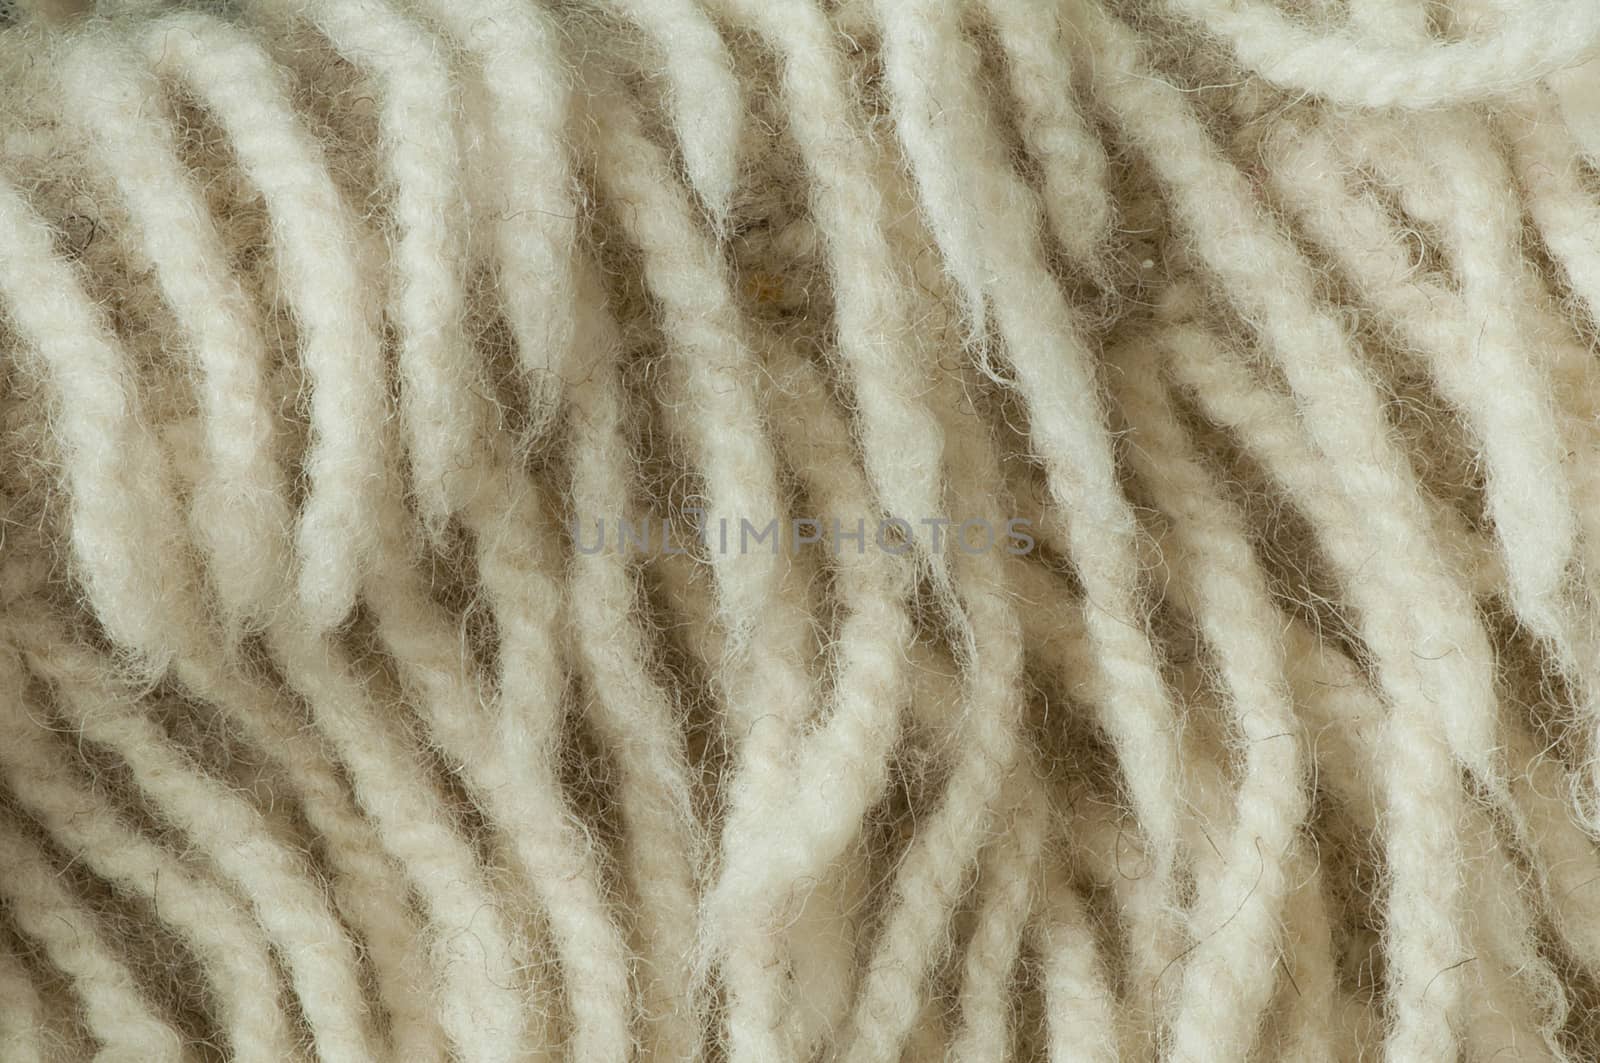 Wool fibers by deyan_georgiev